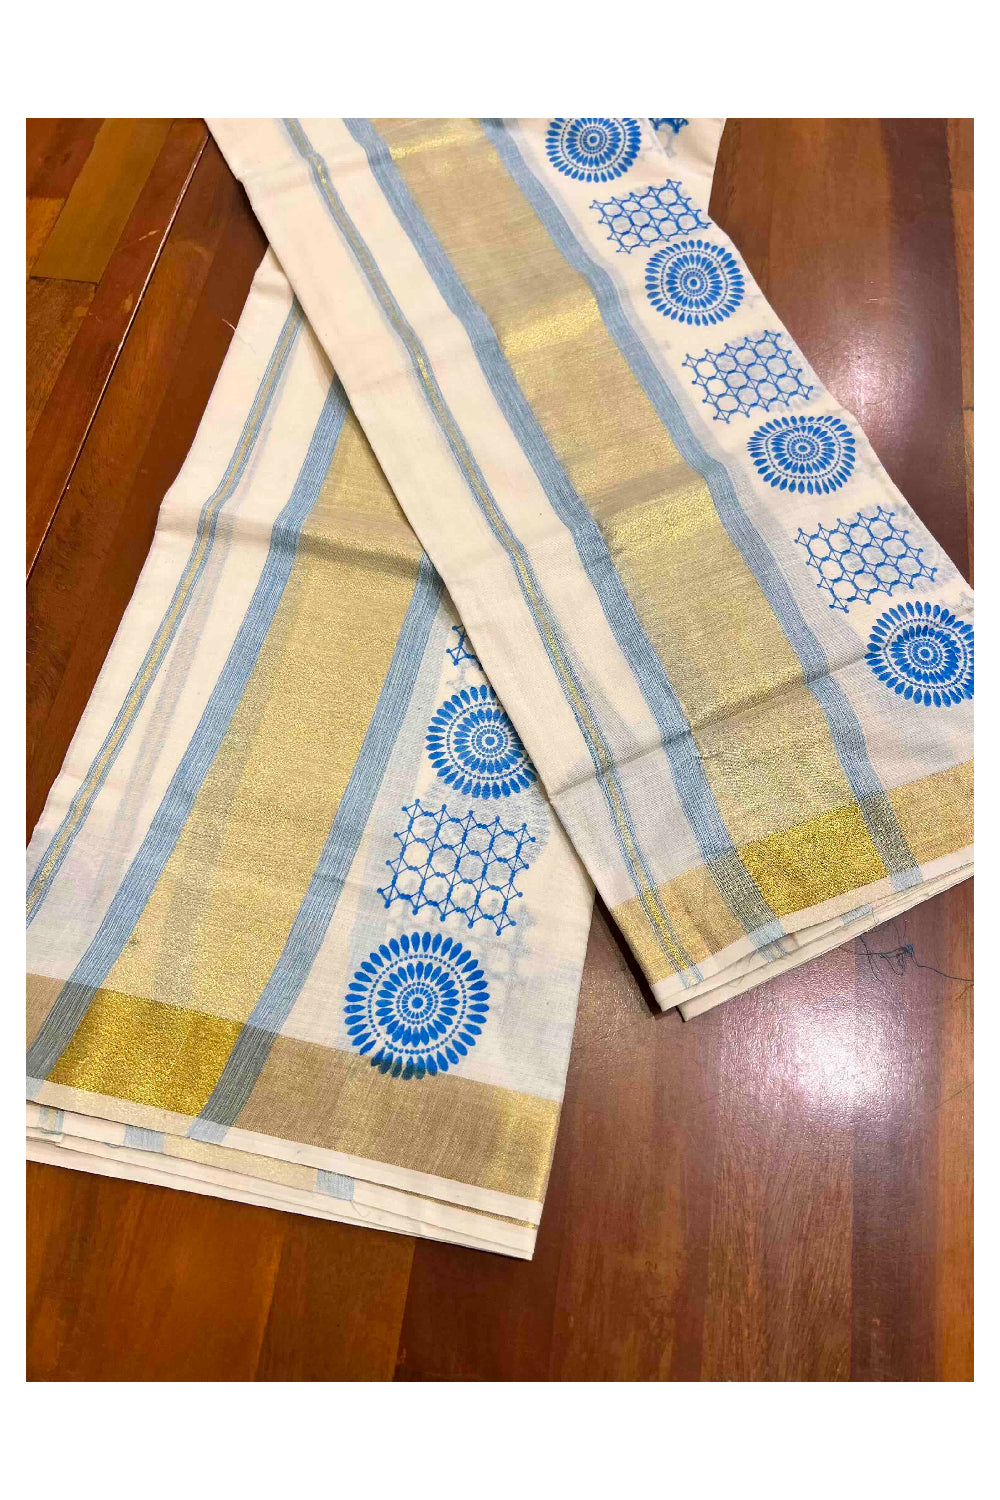 Kerala Cotton Single Set Mundu (Mundum Neriyathum) with Blue Block Prints with Kasavu Border  - 2.80Mtrs